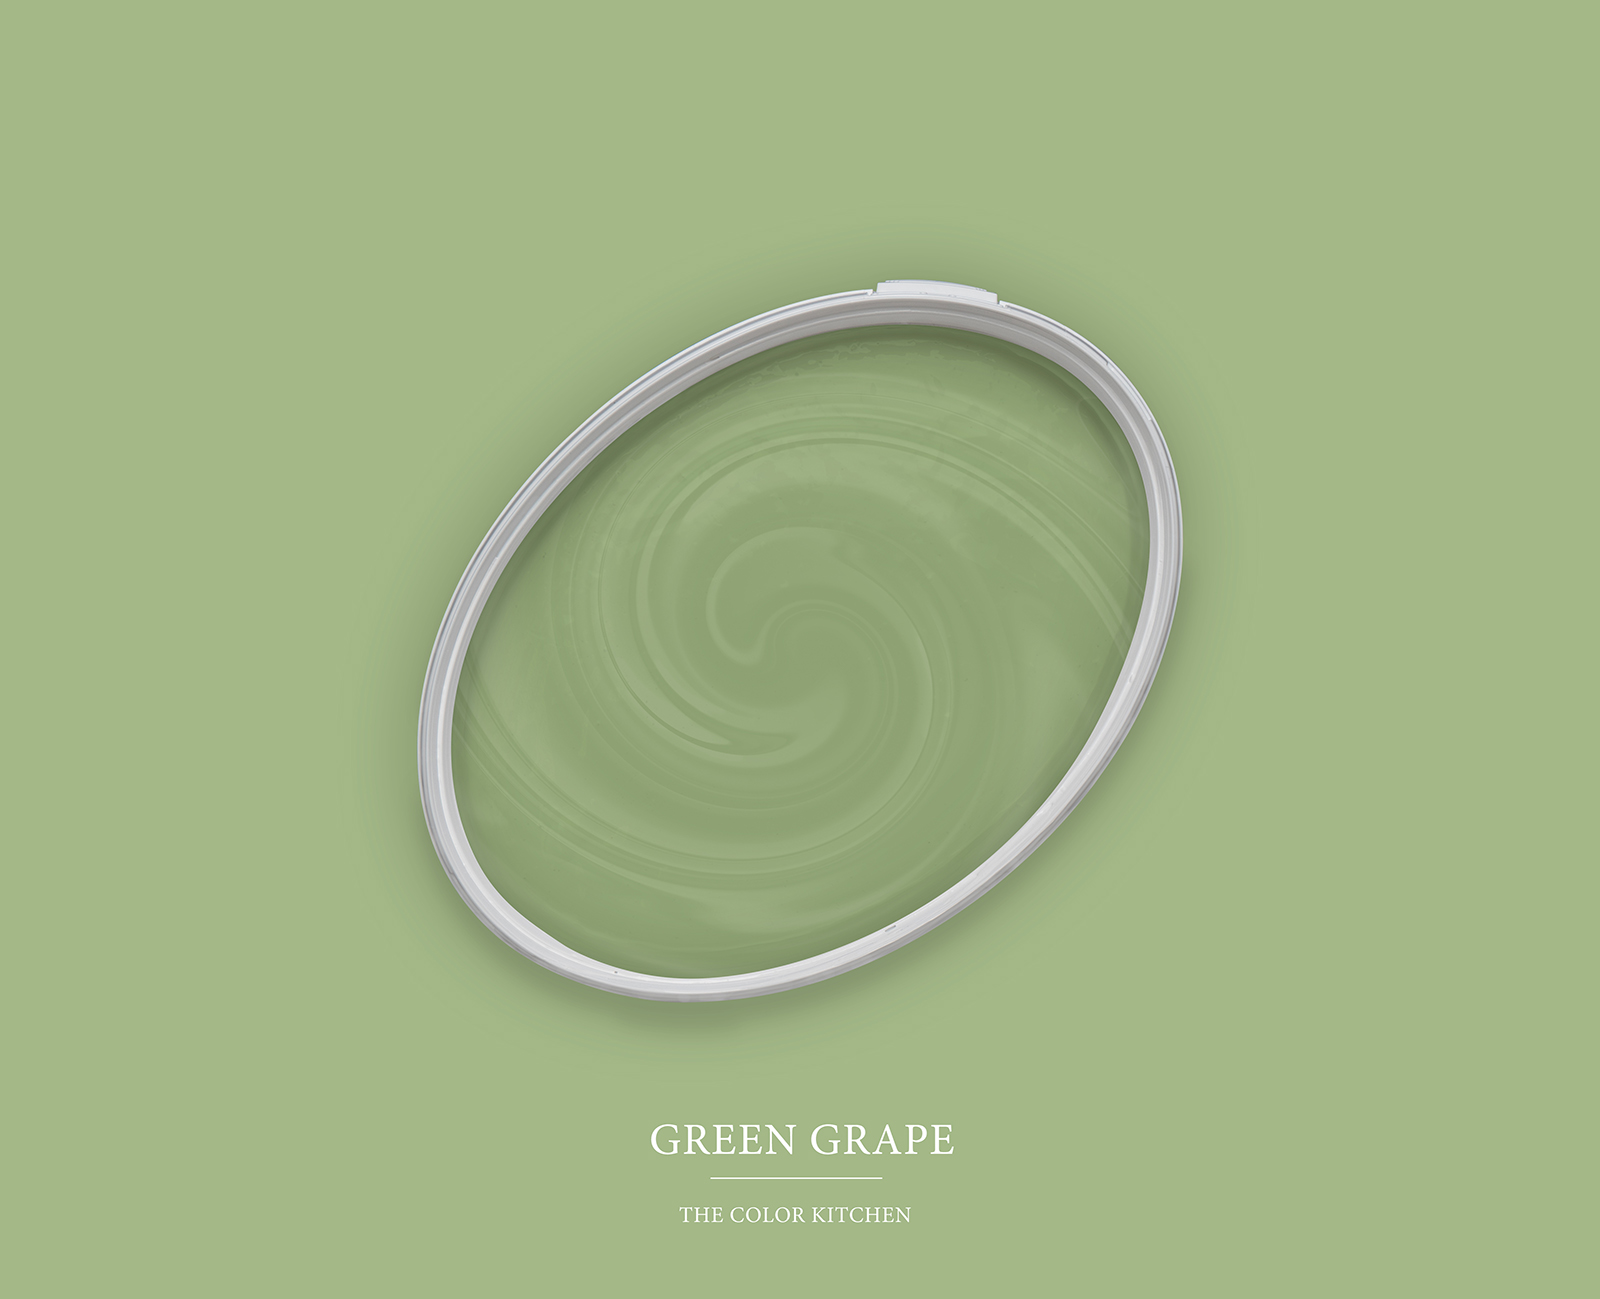 Wandfarbe in lebendigem Grün »Green Grape« TCK4008 – 5 Liter
